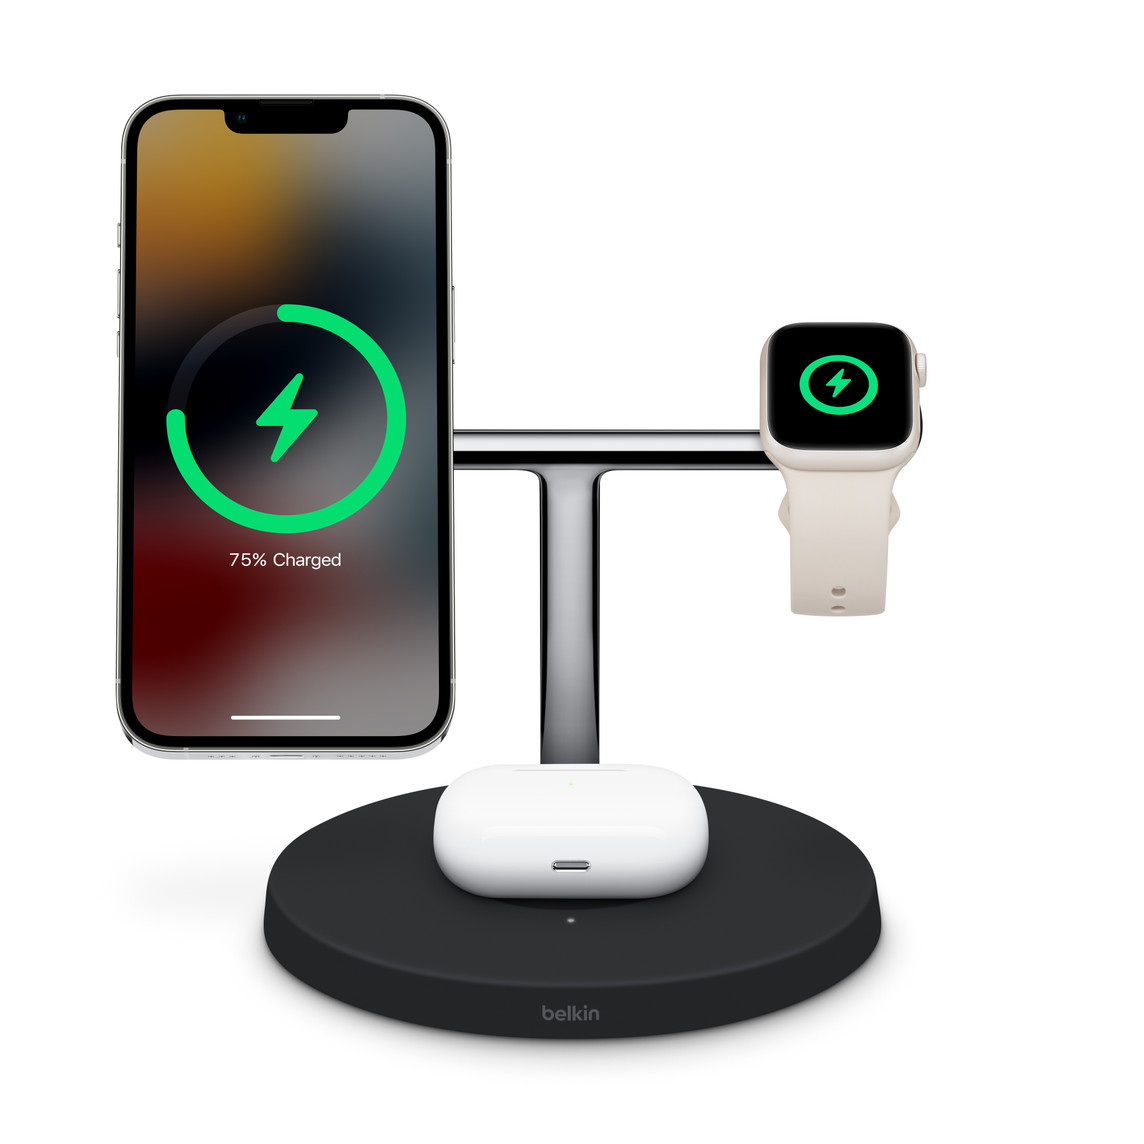 支援 MagSafe 的 Belkin Boost Charge Pro 三合一無線充電器，可以同時為你的 iPhone、Apple Watch 和適用於 AirPods 的無線充電盒充電